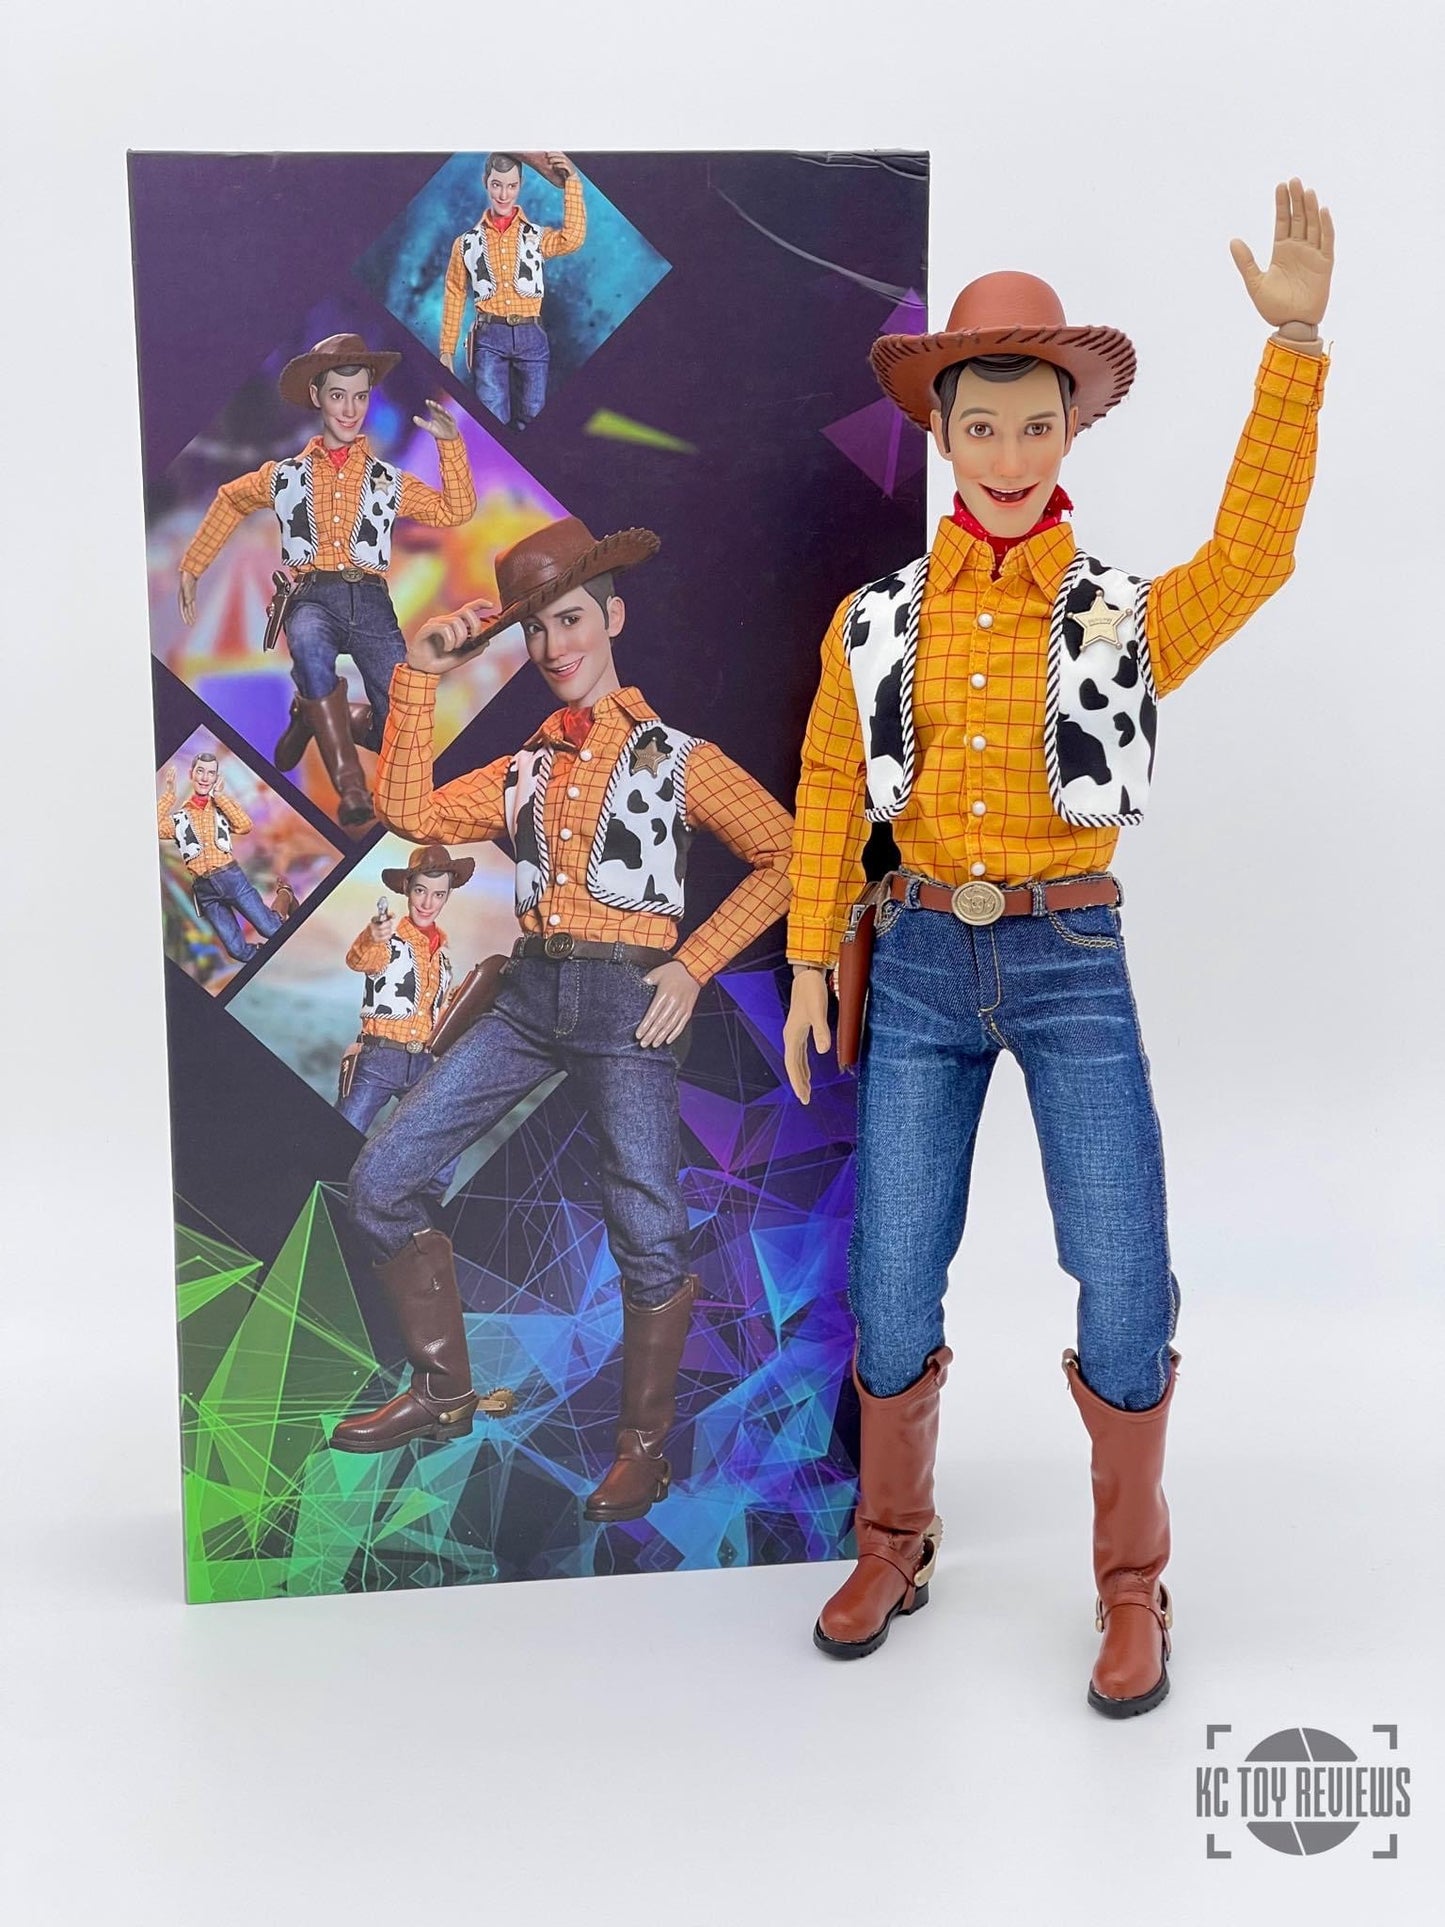 Pedido Figura Happy Cowboy marca Play Toy P015 escala 1/6